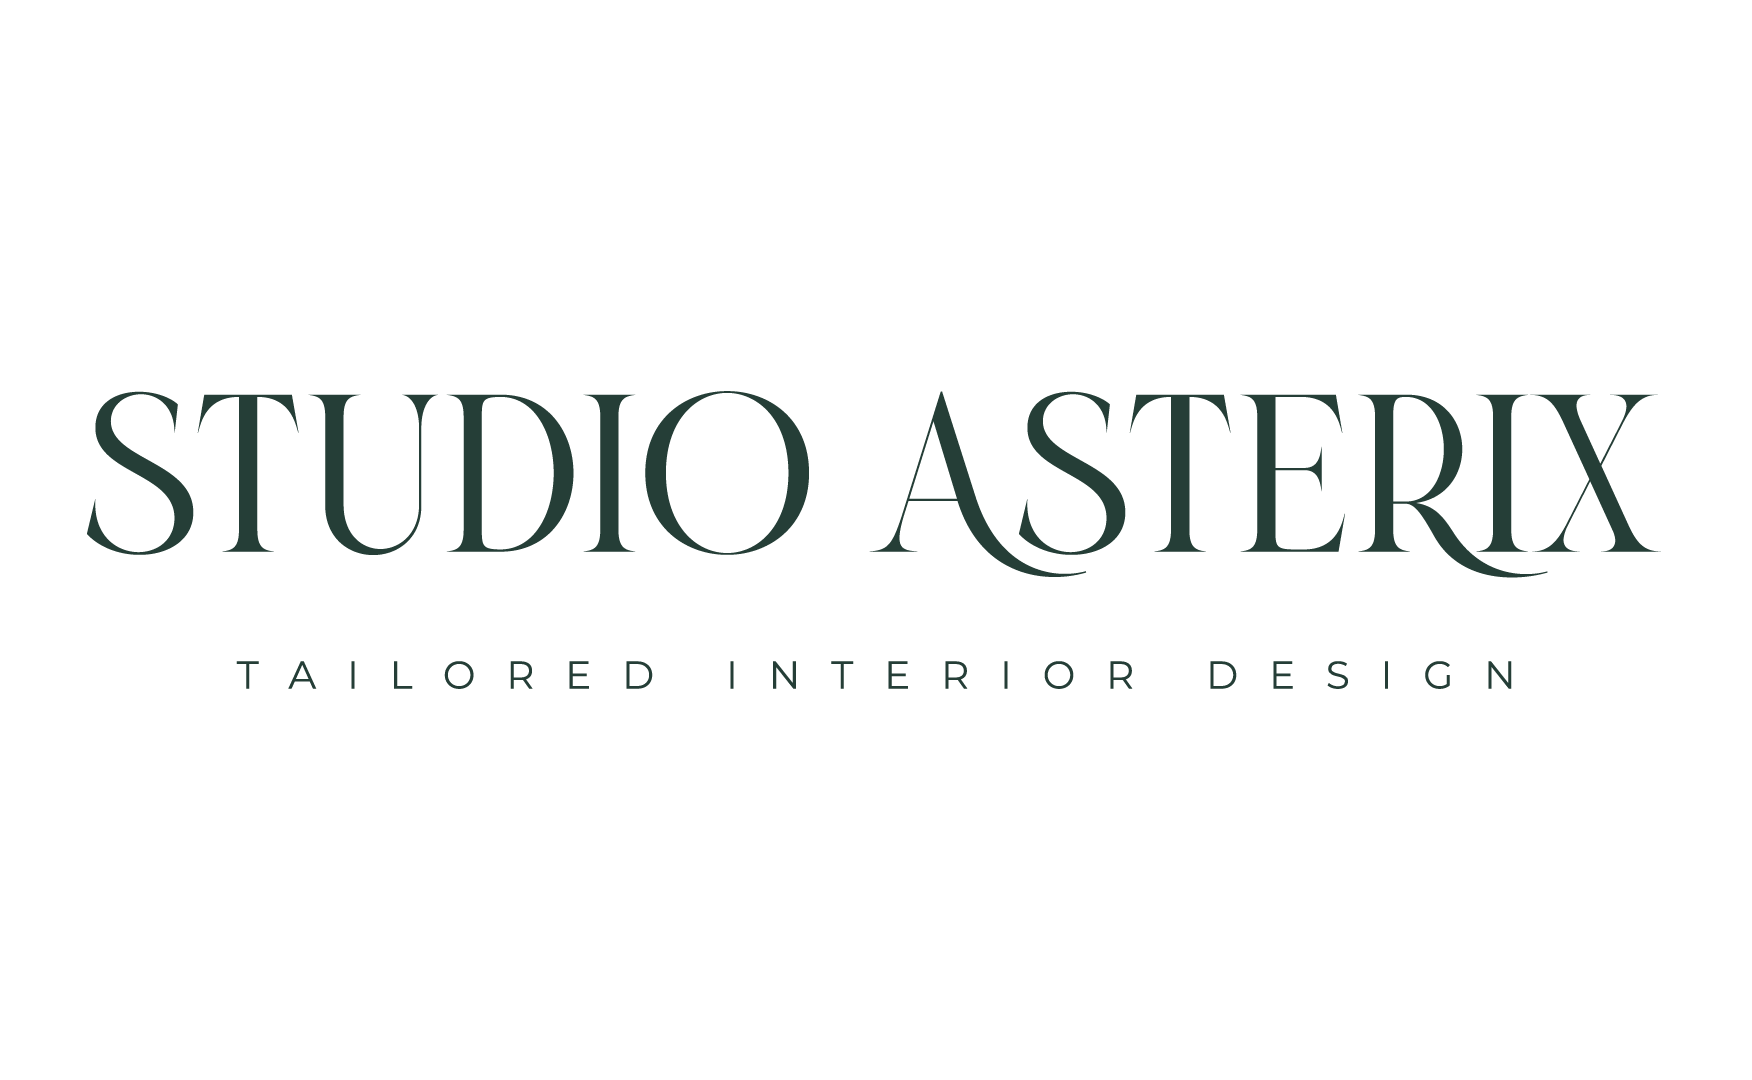 Studio Asterix Interior Design's Logo